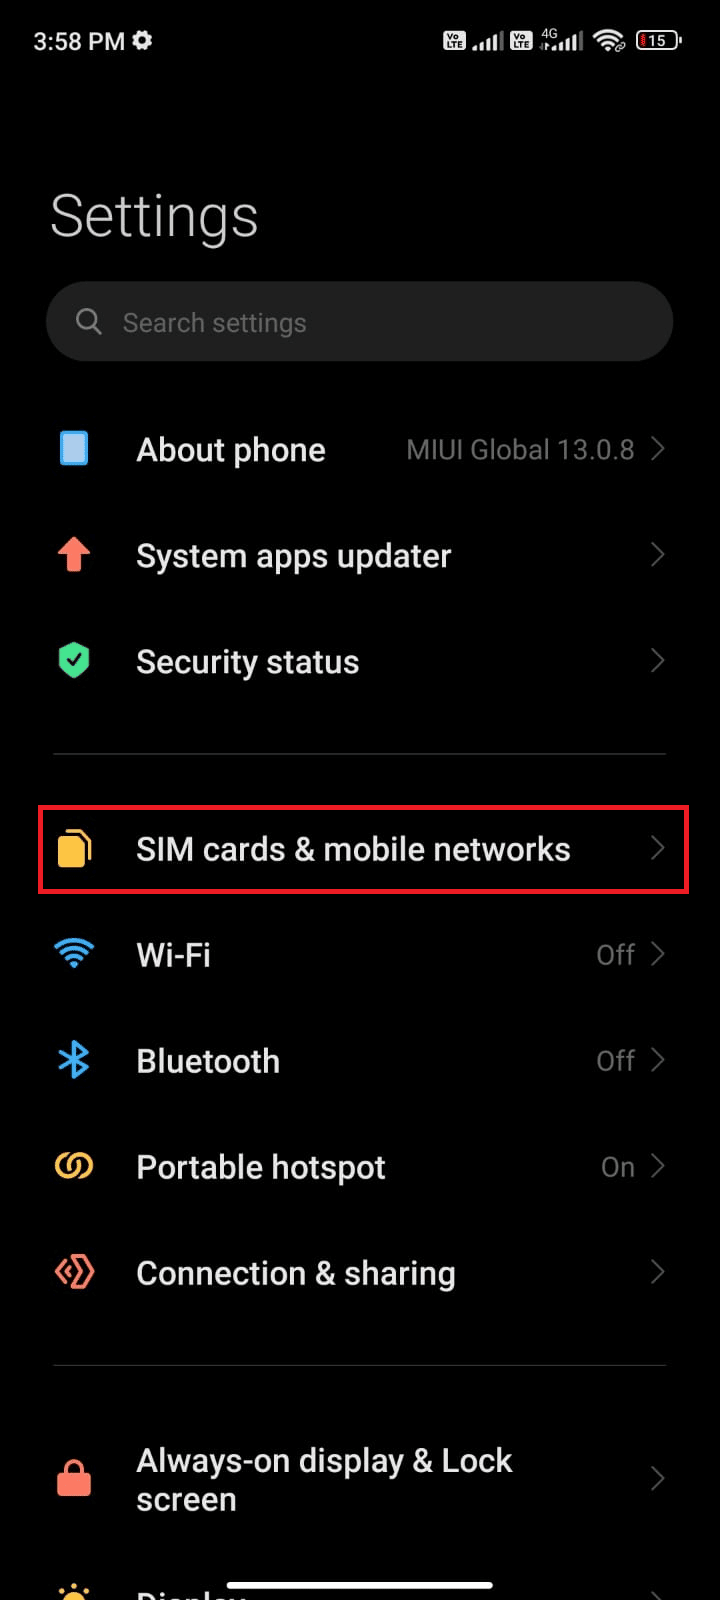 toque na opção de redes móveis de cartões SIM